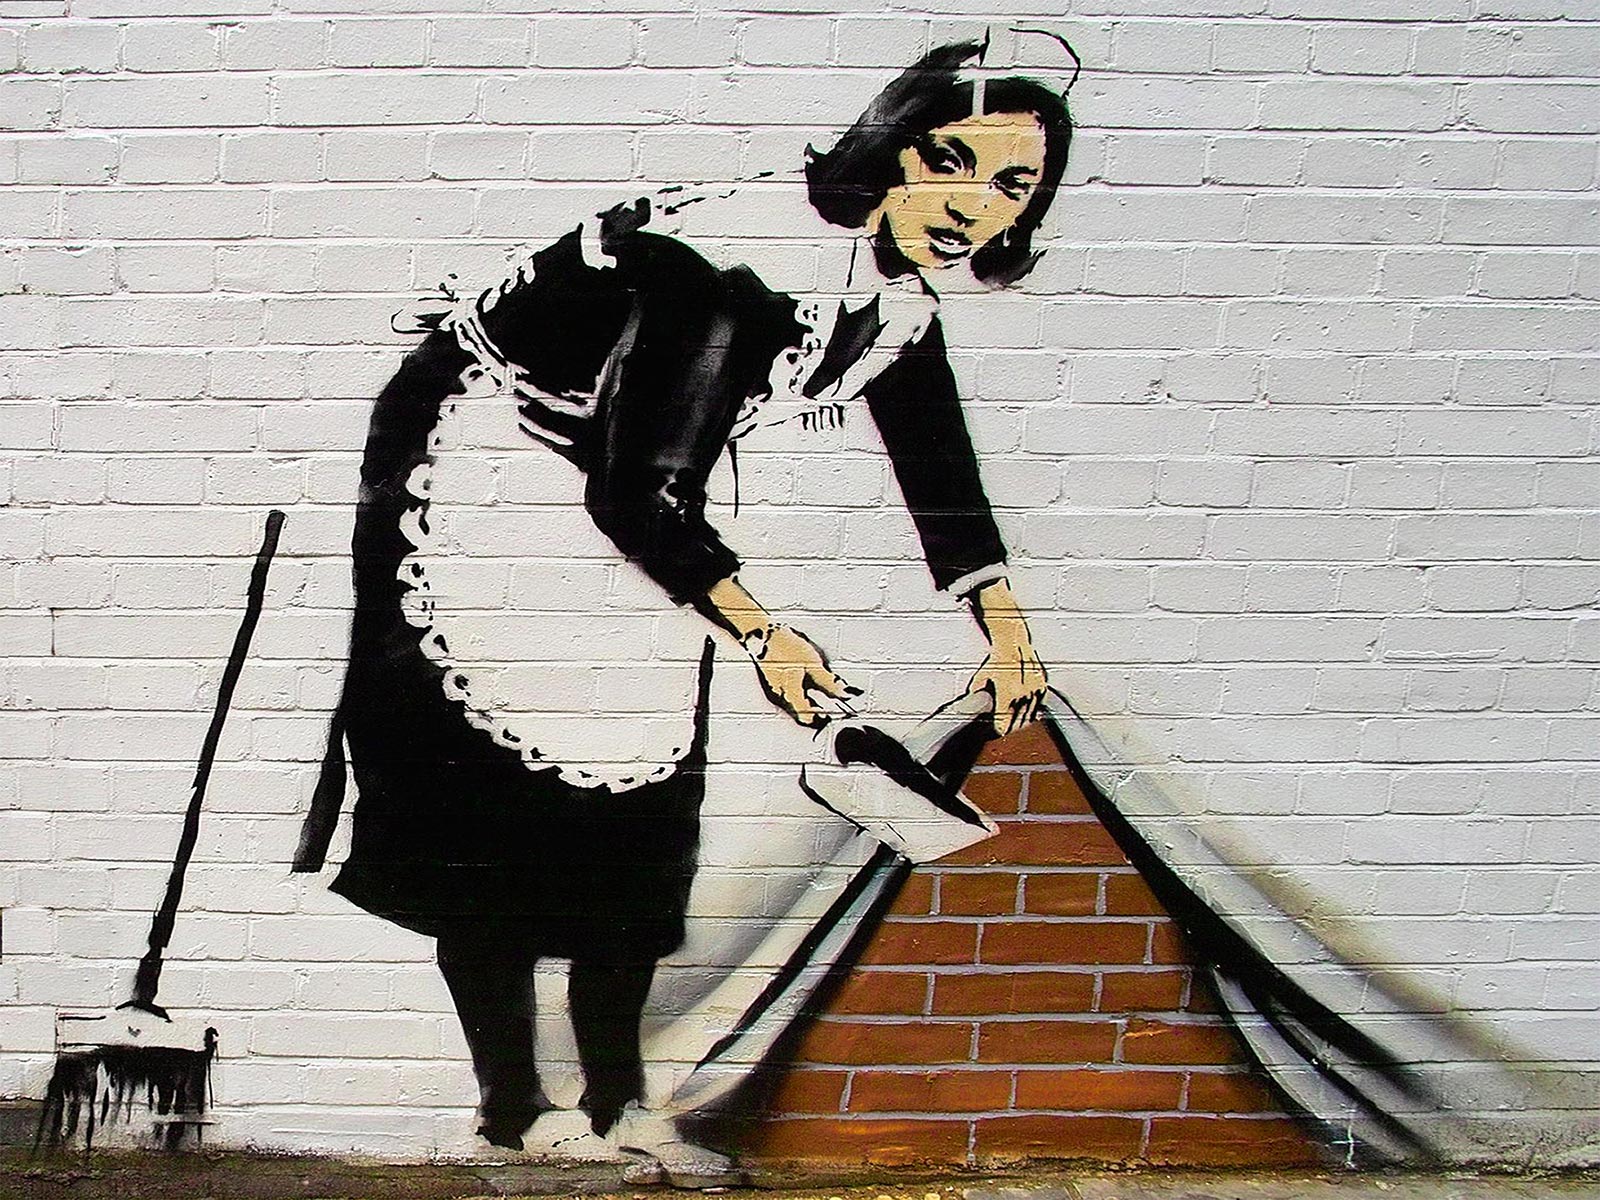 Discourse Banksy